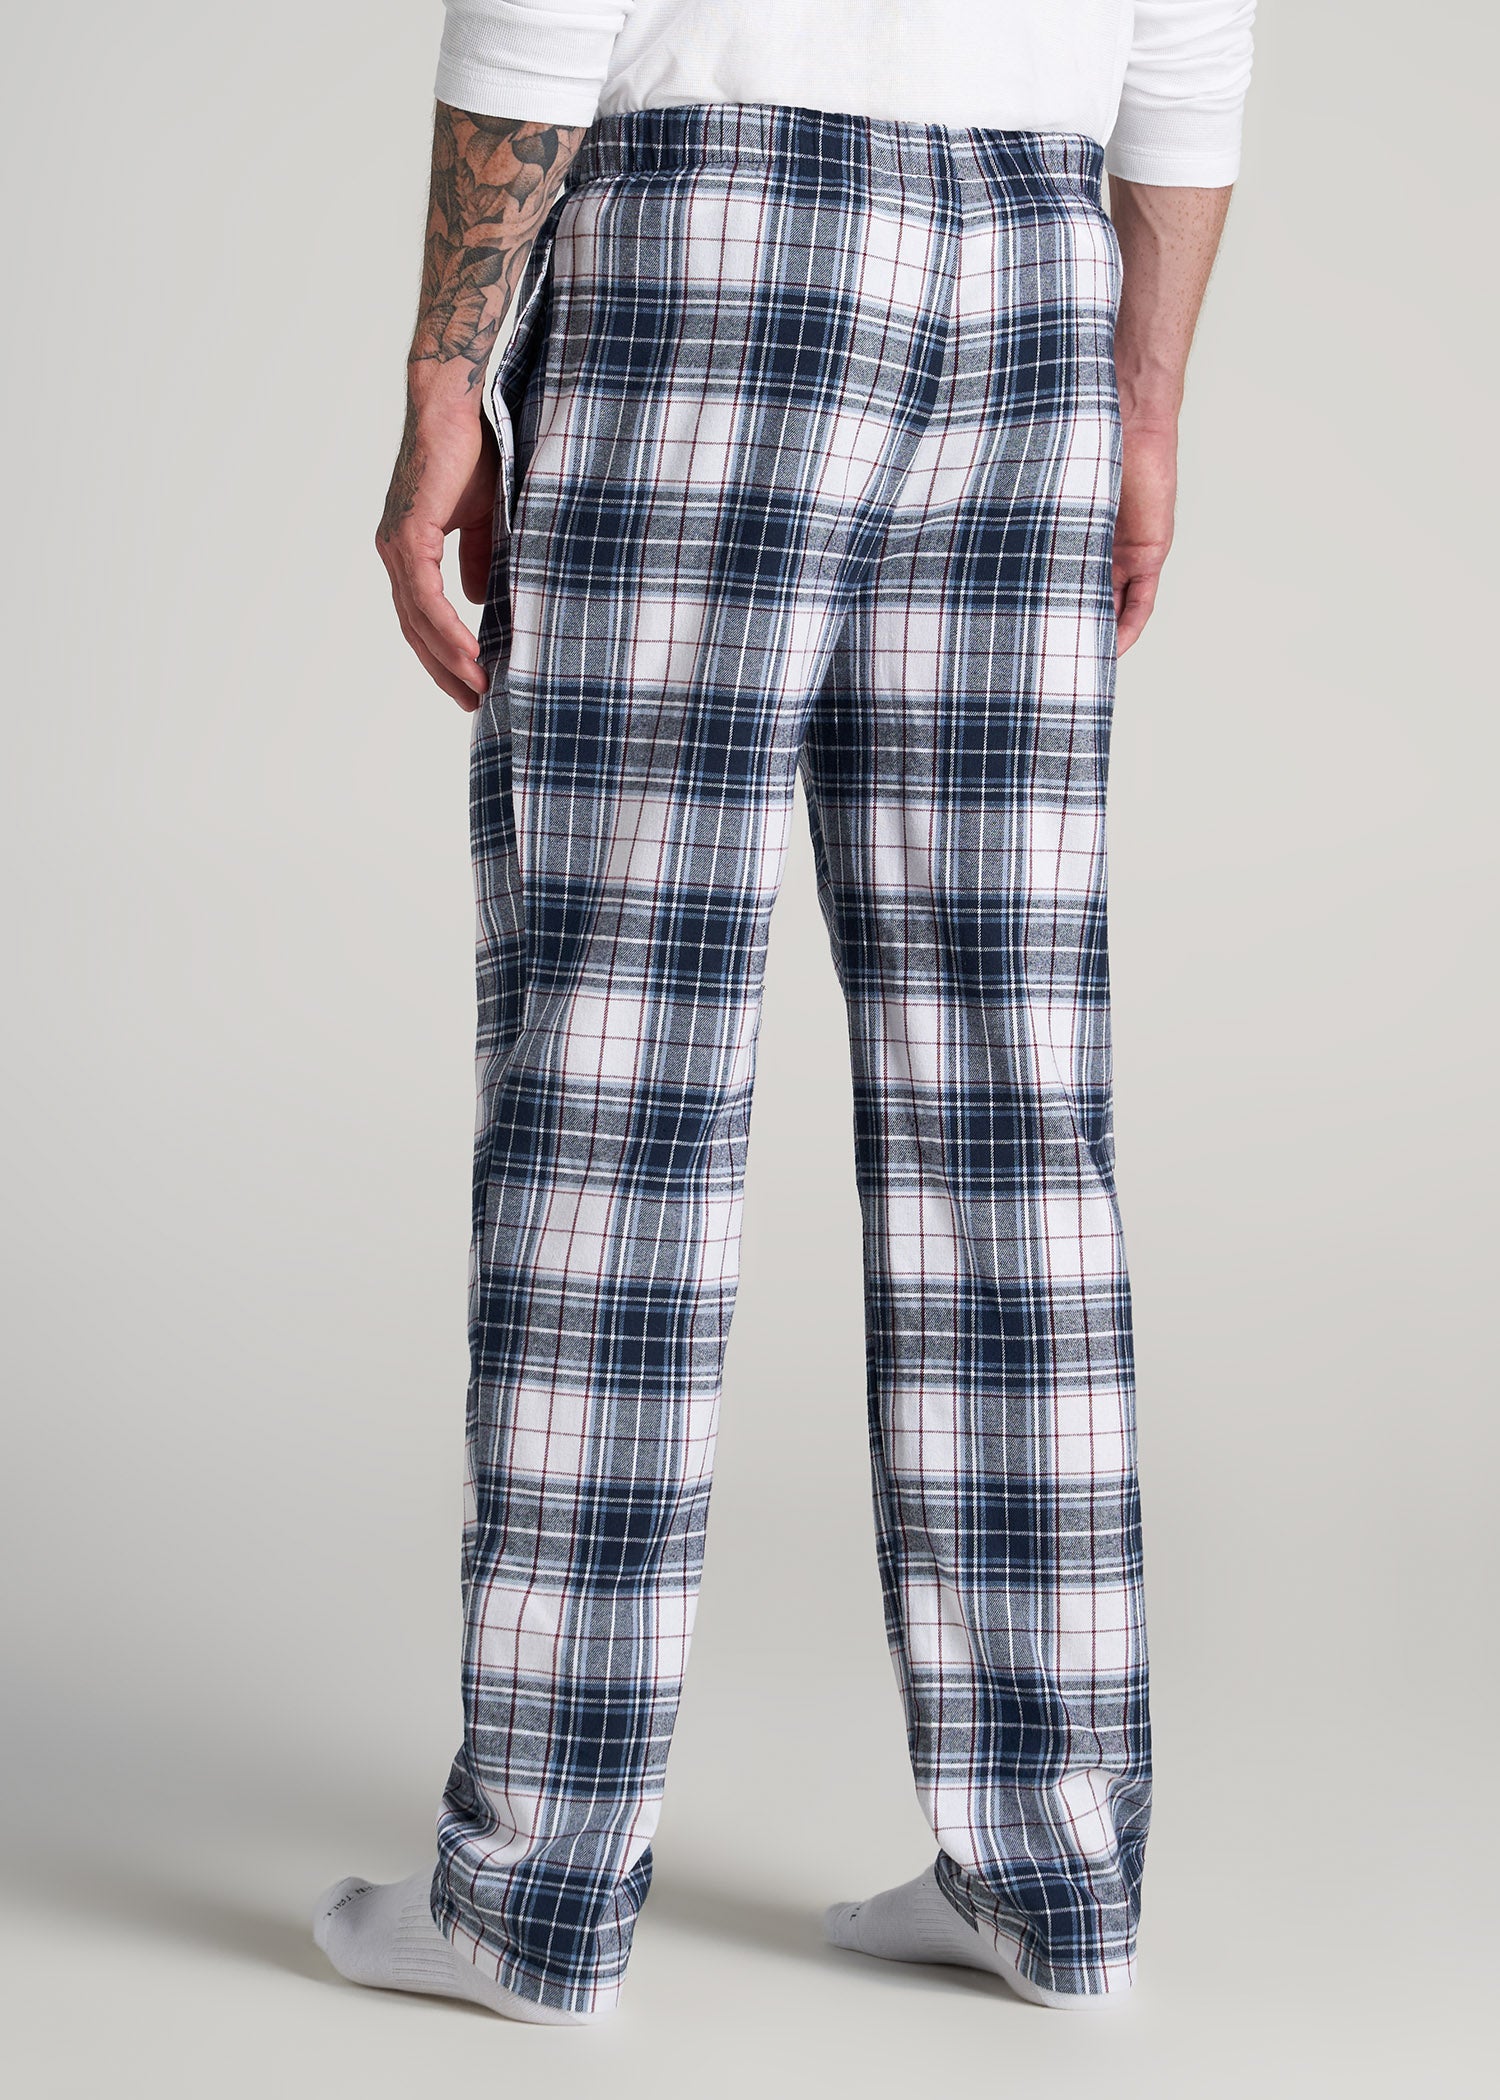 100% cotton pajamas for women pijamas simple ladies long sleeved casua